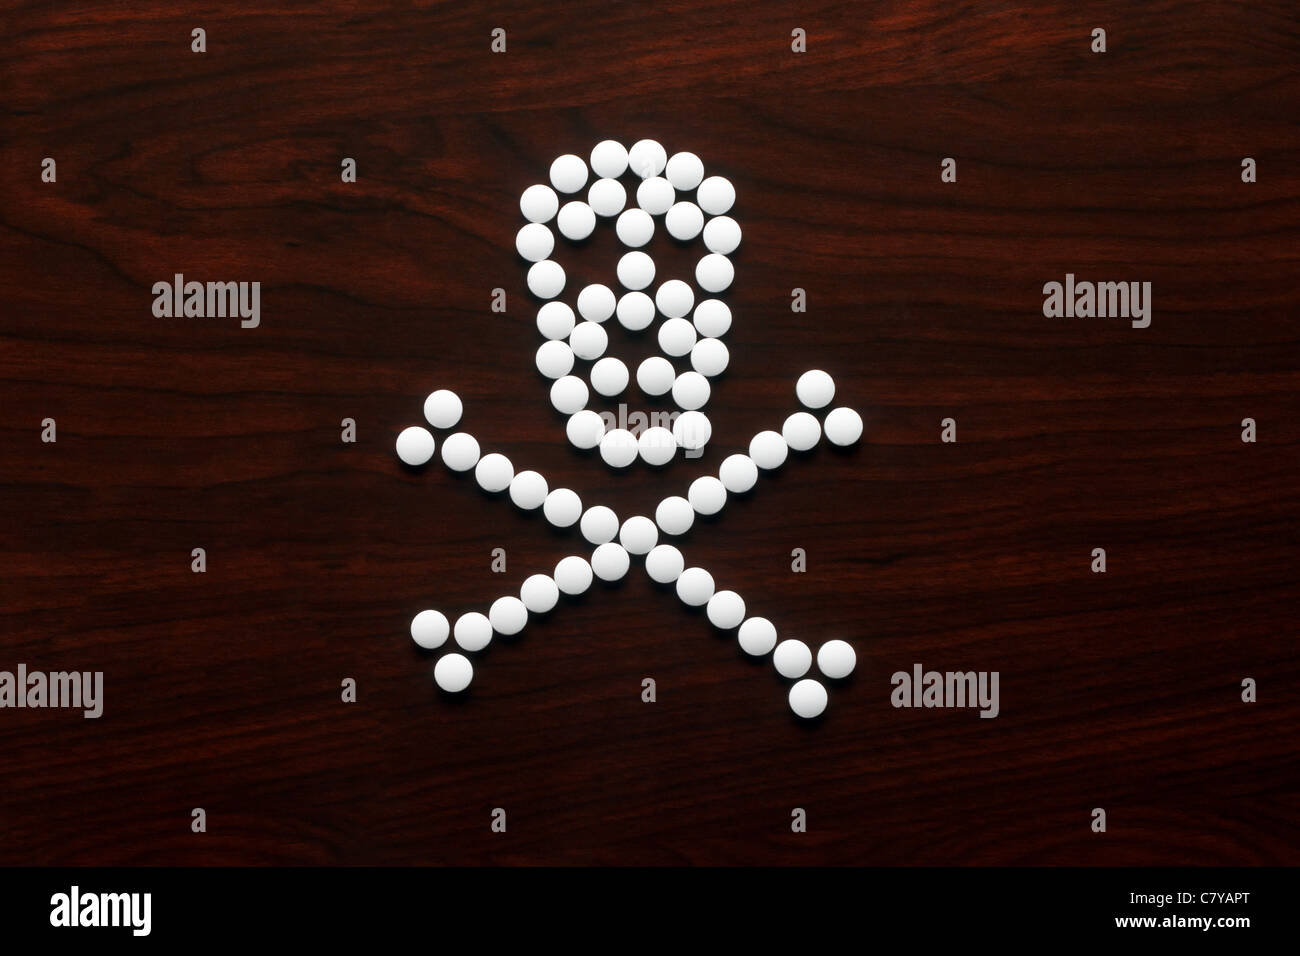 Pilules blanches formées dans un crâne sur la surface en bois Banque D'Images